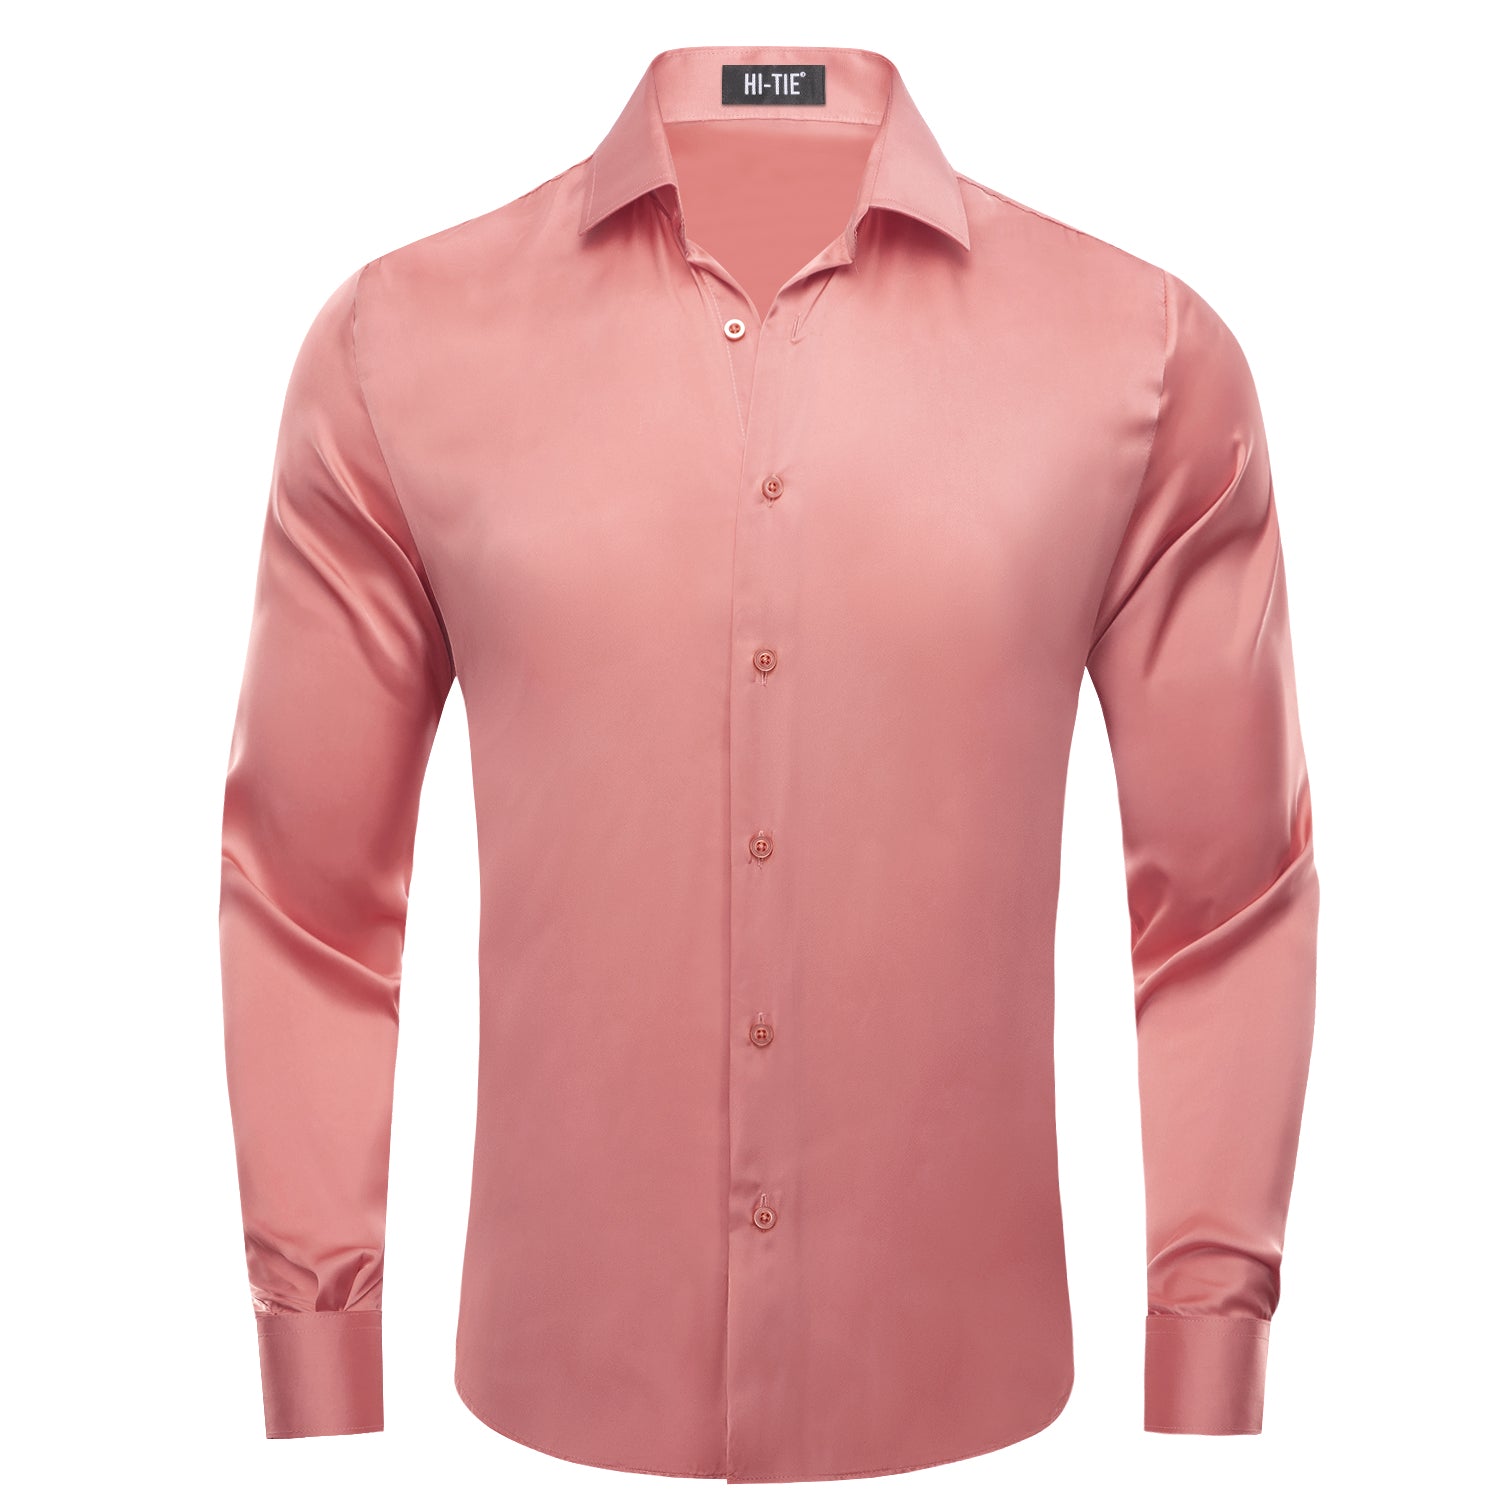 solid light pink dress shirt